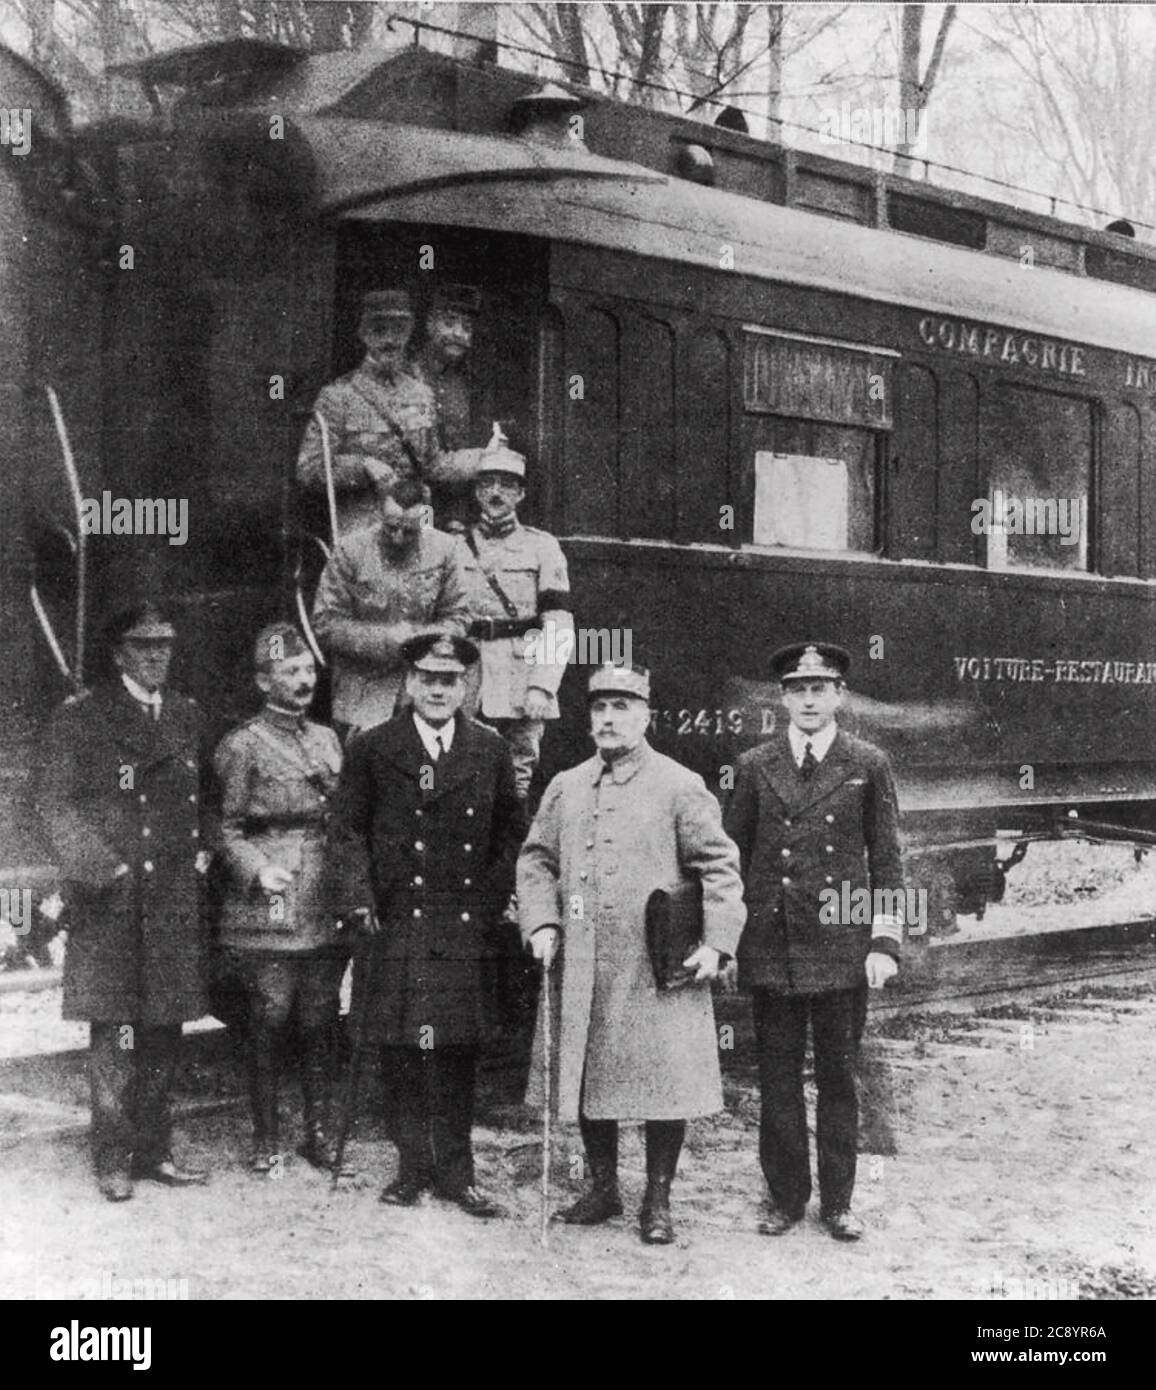 L'ALLEMAGNE CAPITULE Marshall Ferdinand Foch avec un groupe de délégués à côté du chariot de chemin de fer dans la forêt de Compiegne dans laquelle la reddition a été signée. 11 novembre 1918. Sir Rosslyn Wemyss se tient à droite de Foch. Banque D'Images